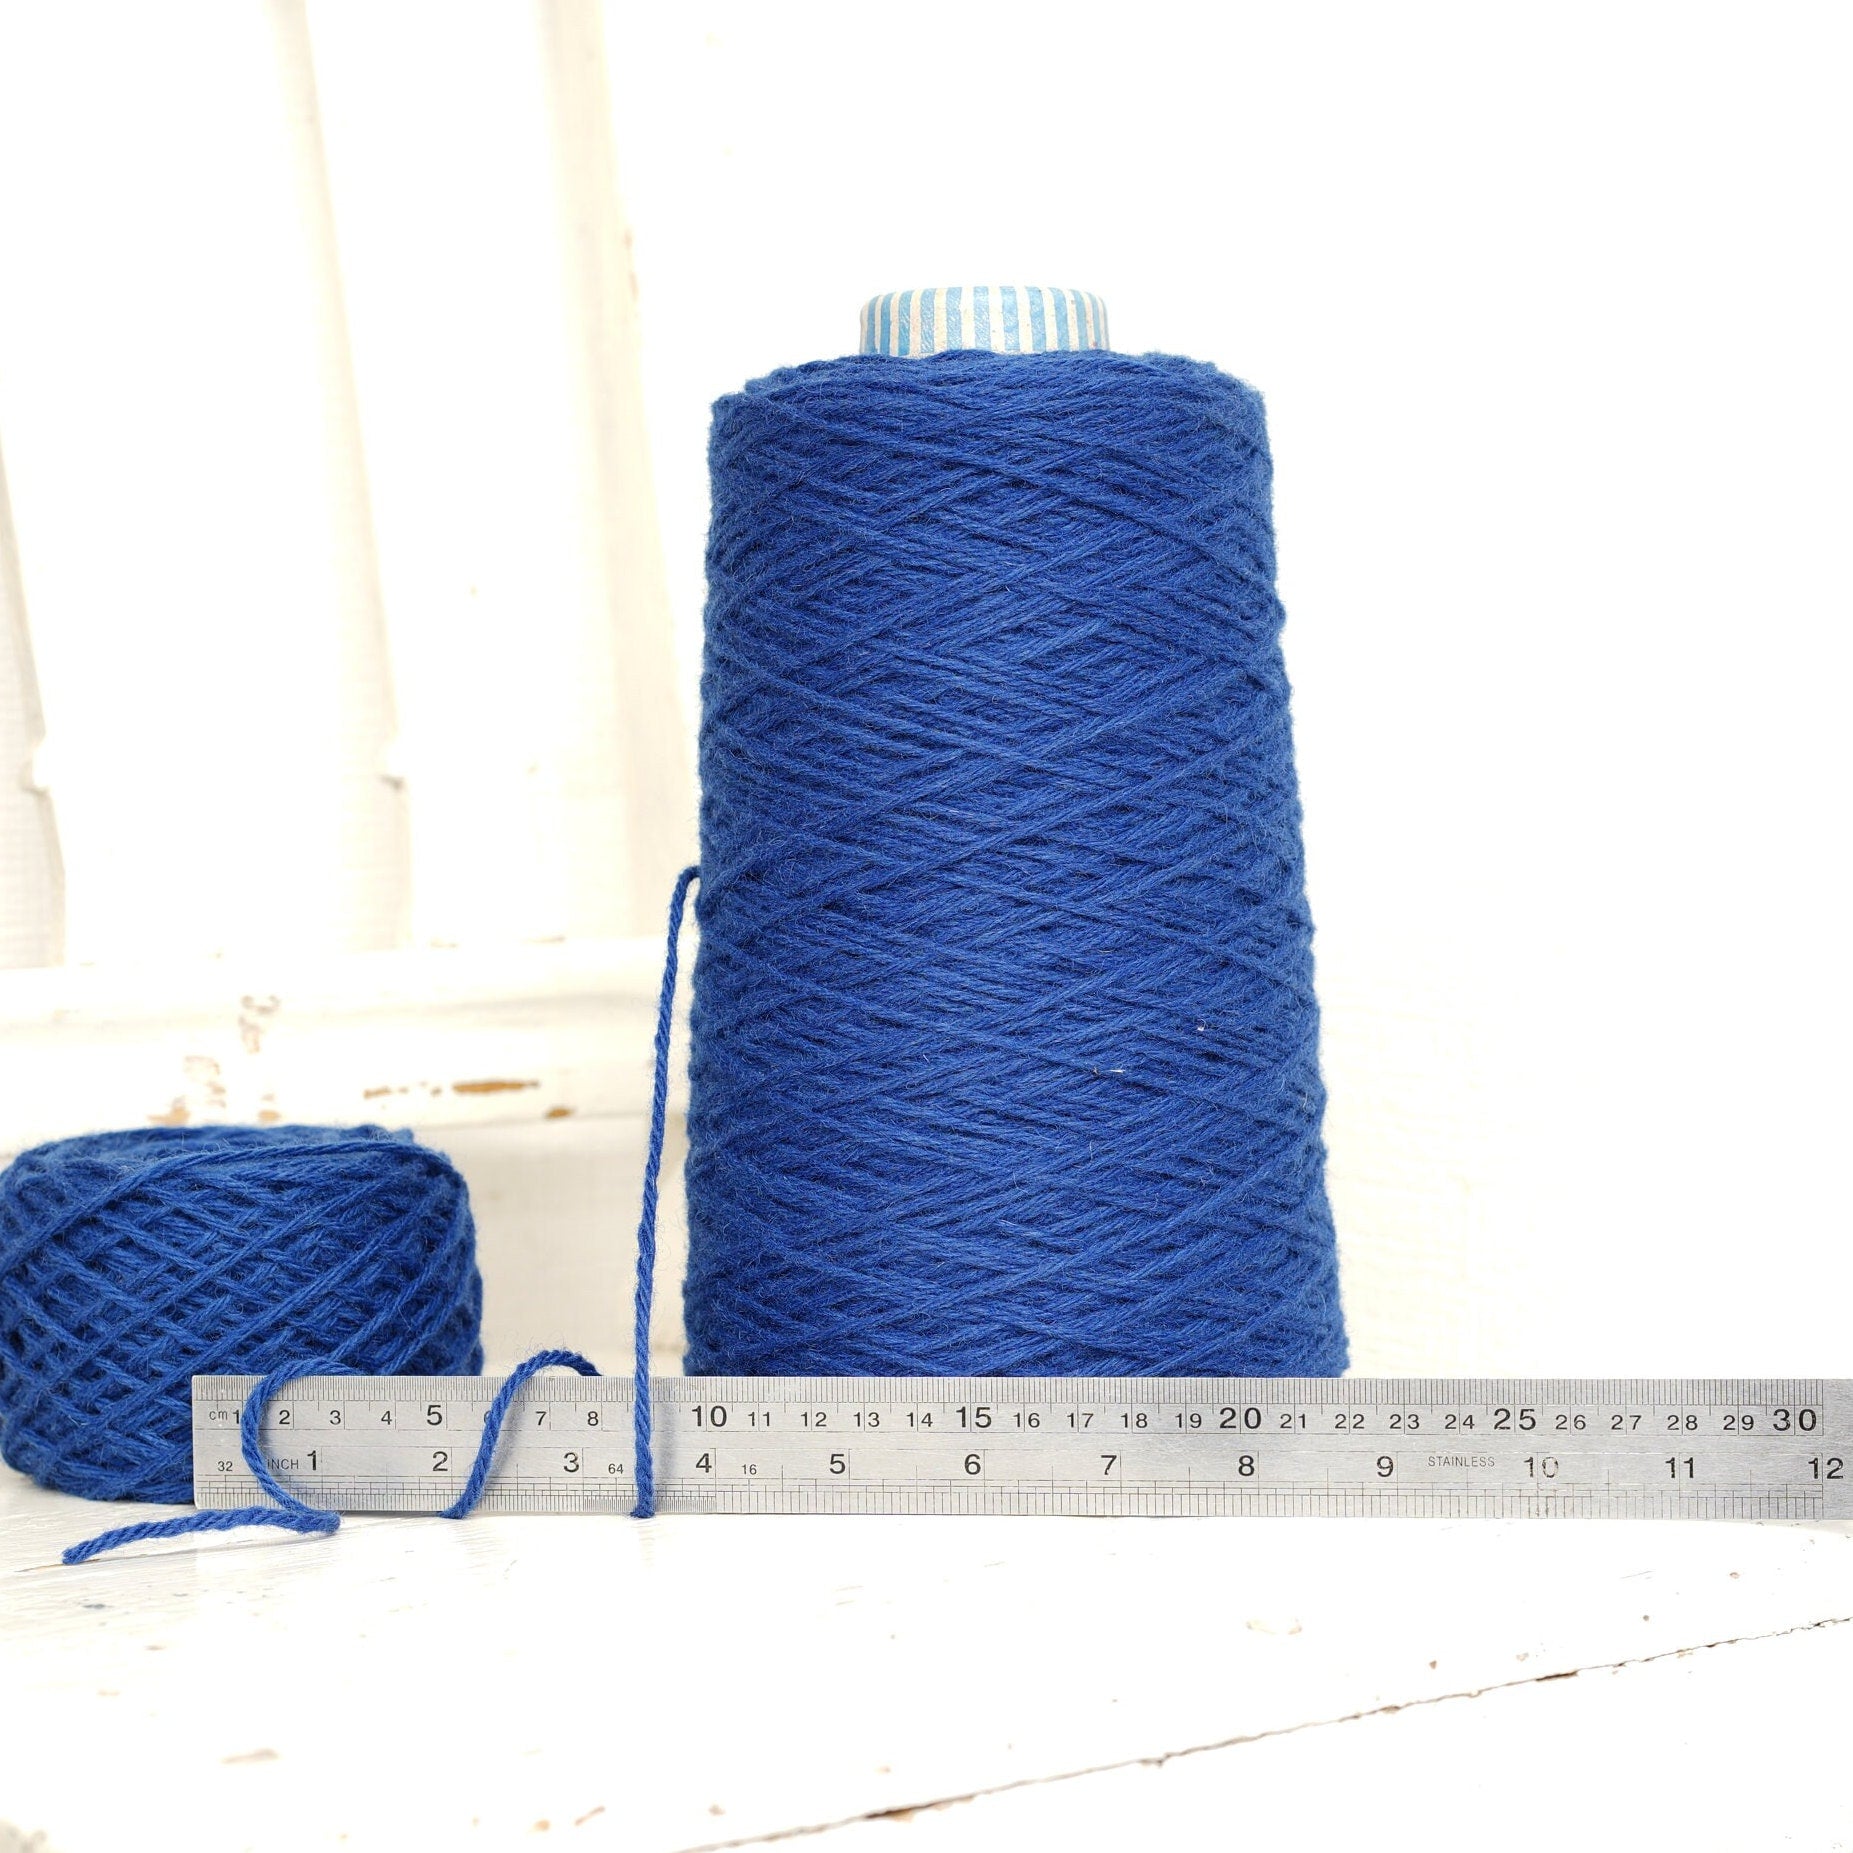 Steel blue yarn for tufting gun, Yarn for knitting